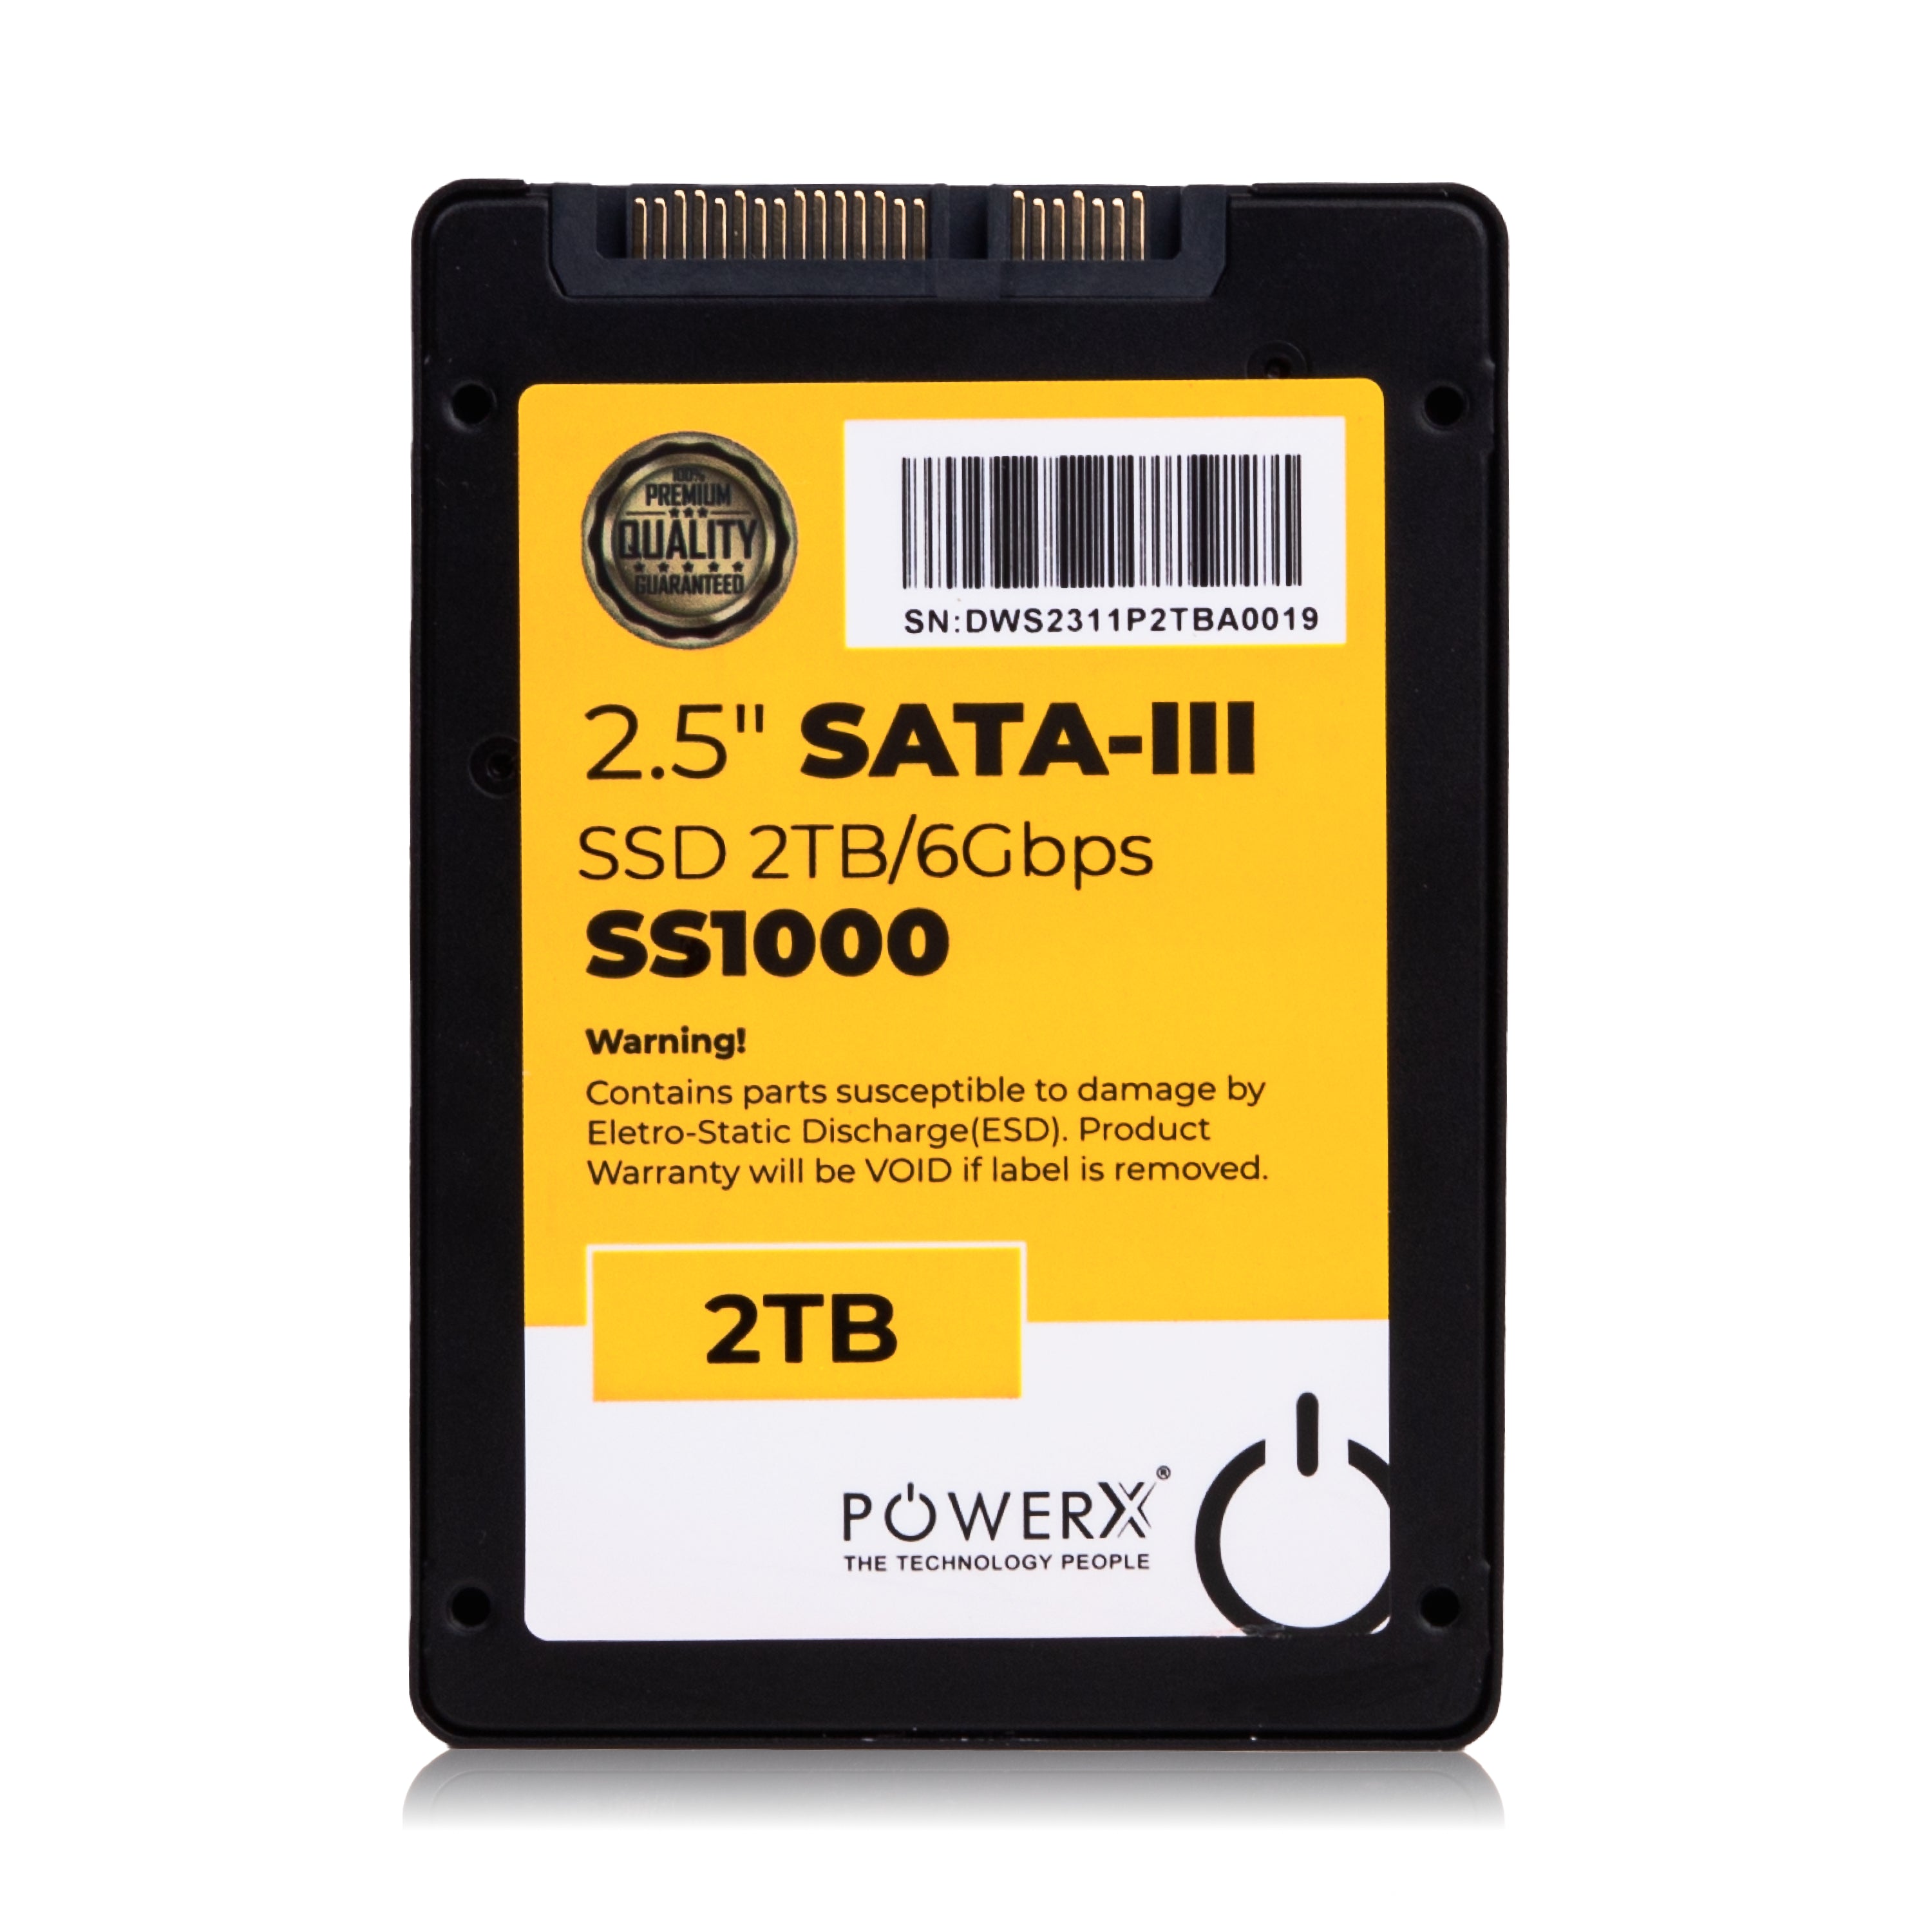 2.5" SATA 3.0 SSD 2TB